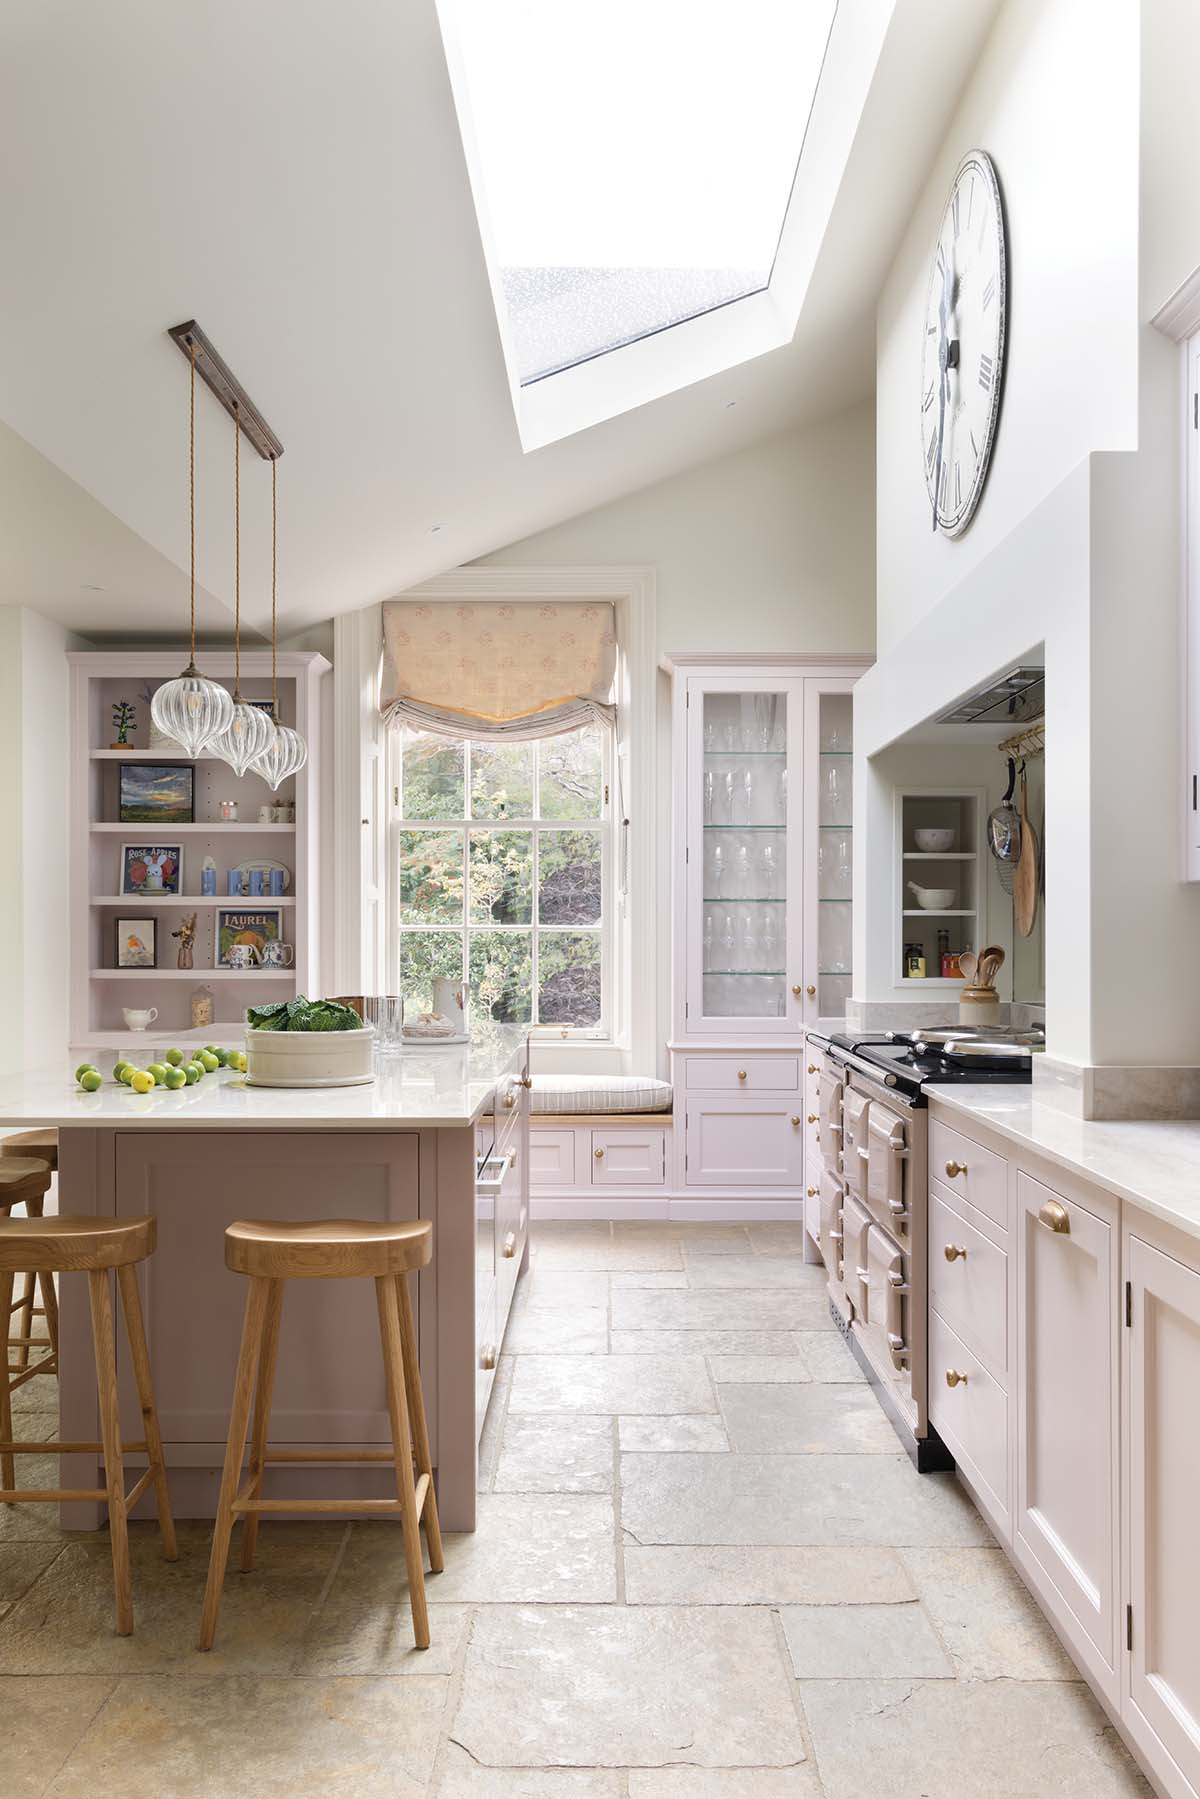 A stunning pink re-design of a sad kitchen interior by Scottish design